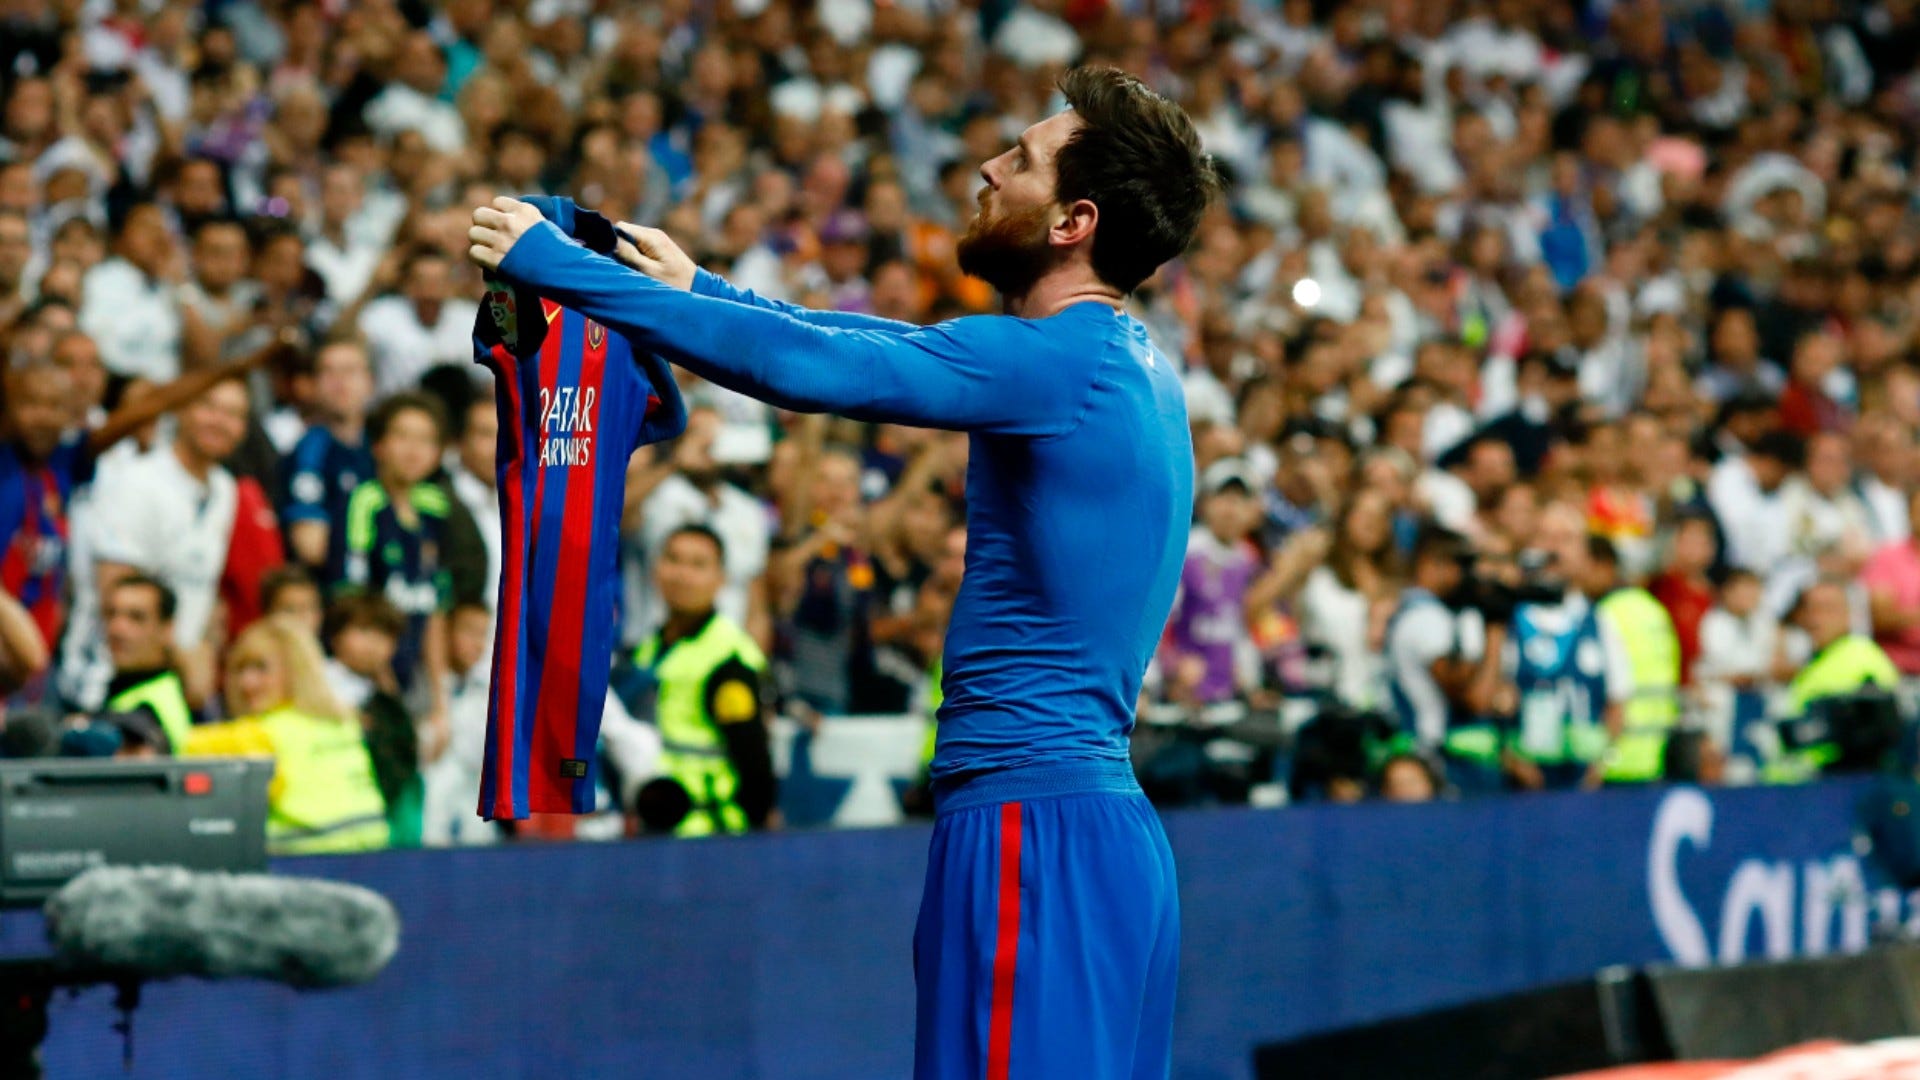 Màn ăn mừng của Lionel Messi khi đánh bại Real Madrid - Đấu trường El Clasico không chỉ là quyết định danh hiệu mà còn là nơi để những cầu thủ vươn lên thành huyền thoại. Hãy cùng ngắm nhìn màn ăn mừng của Lionel Messi khi anh tiễn Real Madrid khỏi sàn đấu - một khoảnh khắc đẹp đẽ của bóng đá.